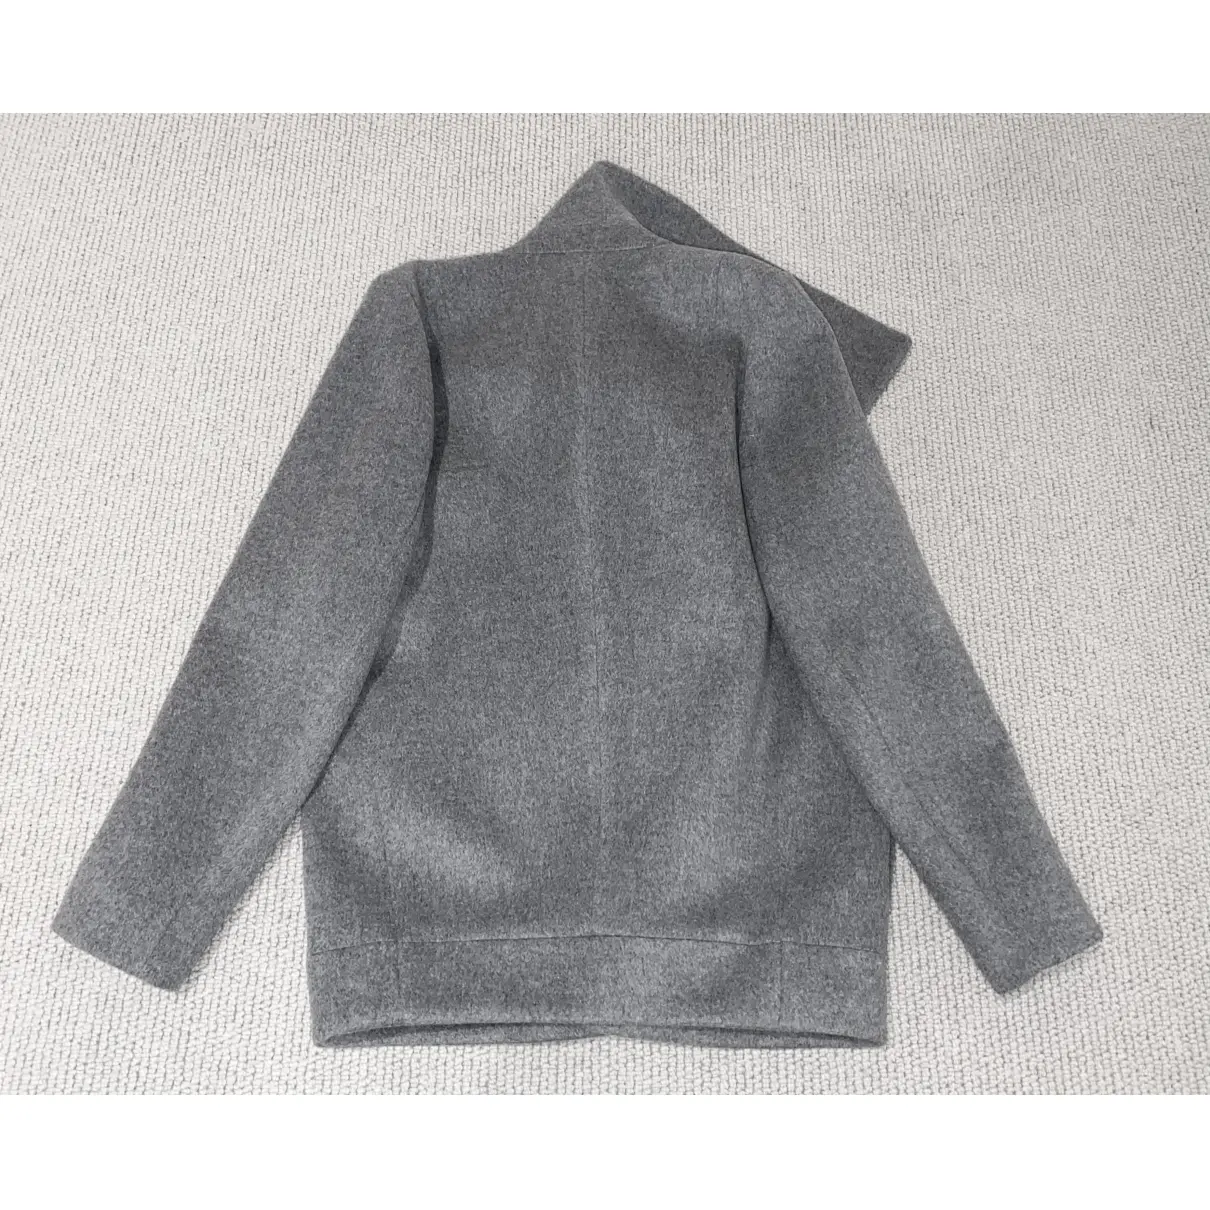 Buy Stella McCartney Wool coat online